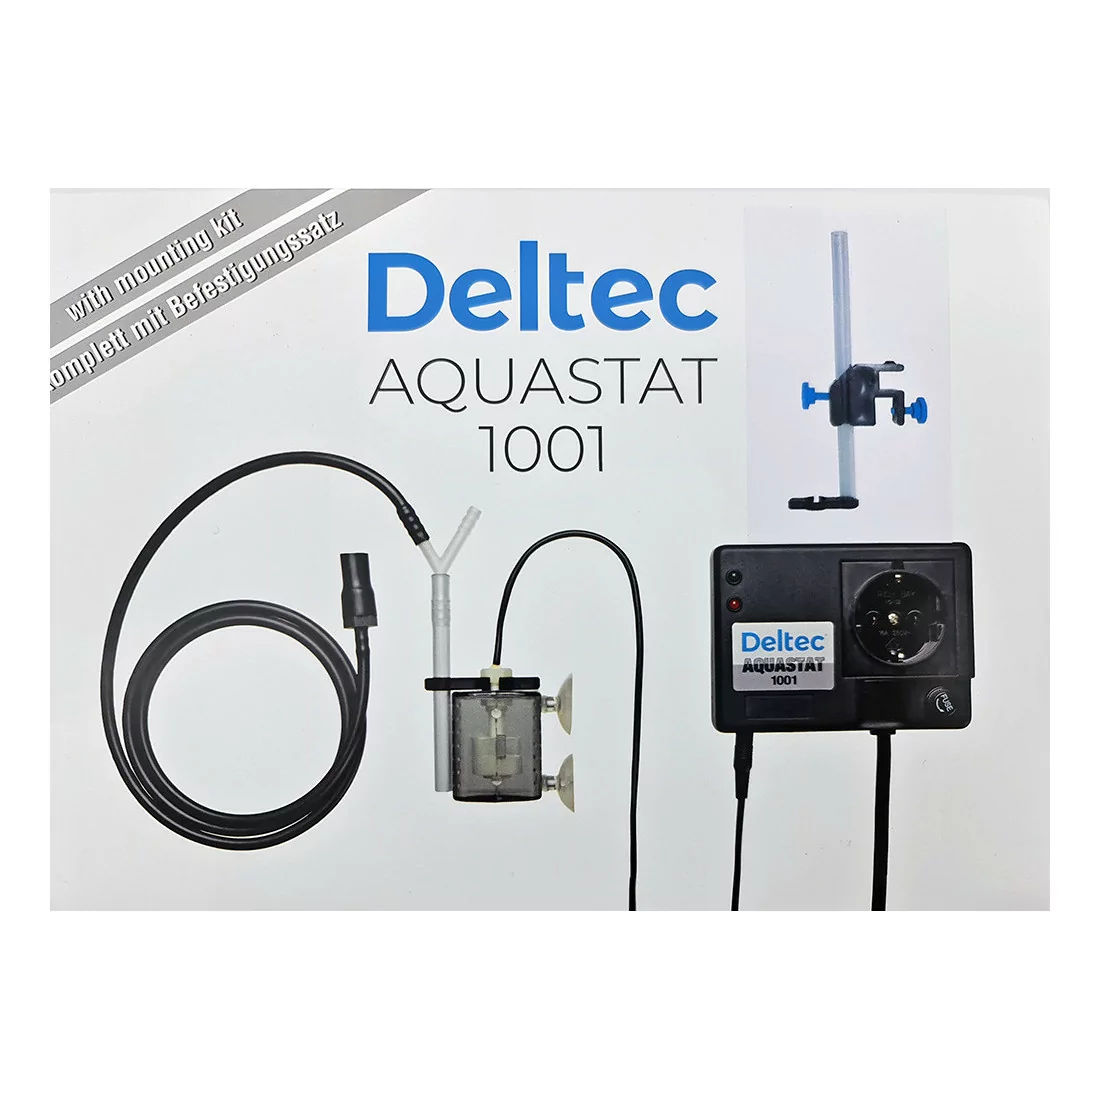 Osmolateur Deltec Aquastat 1001